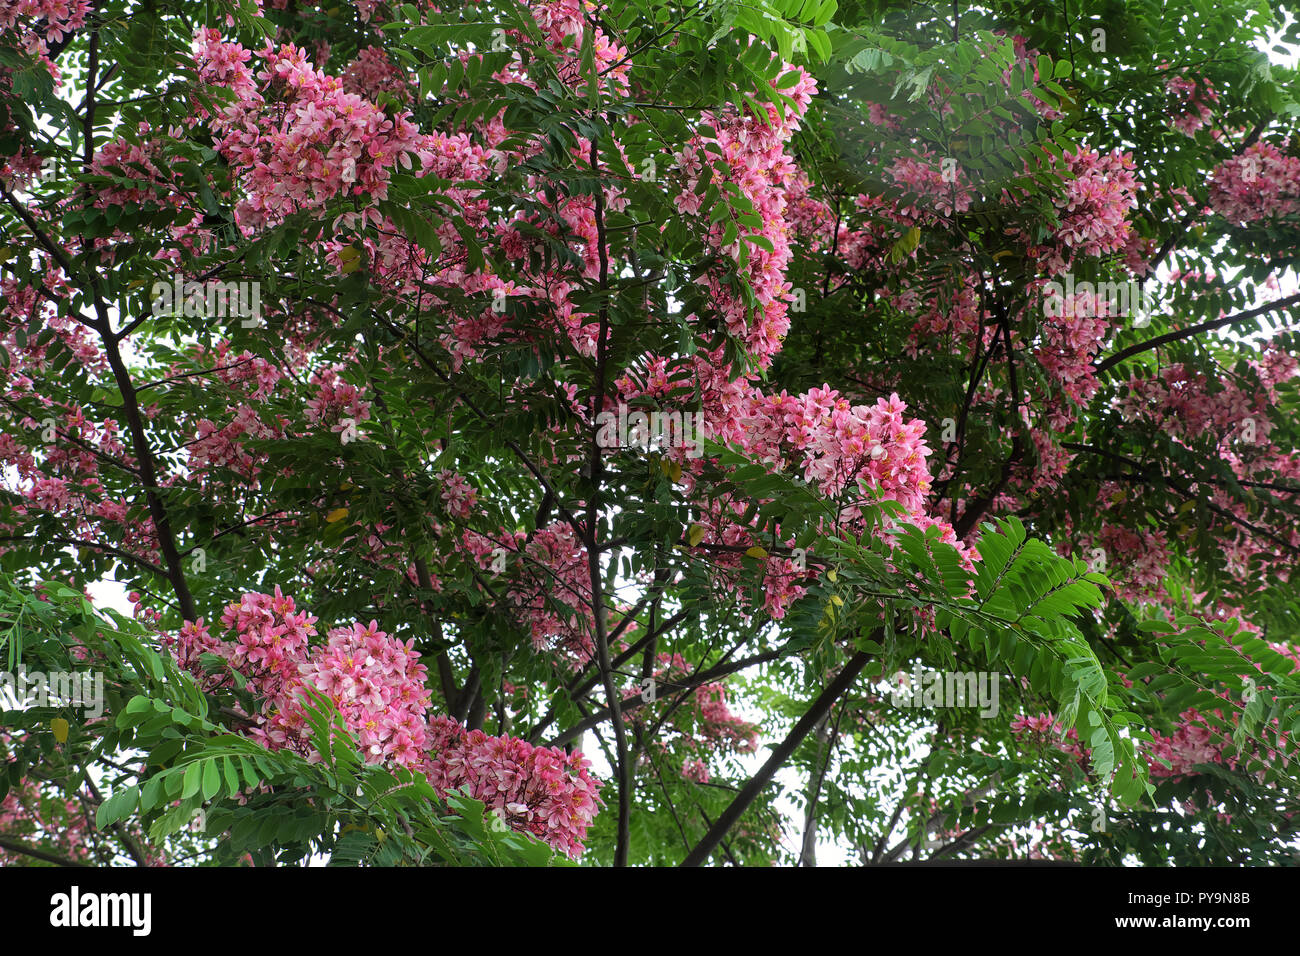 Beau grand arbre à fleurs roses, arbre flamboyant vermillon bloom en couleurs vives le jour Banque D'Images